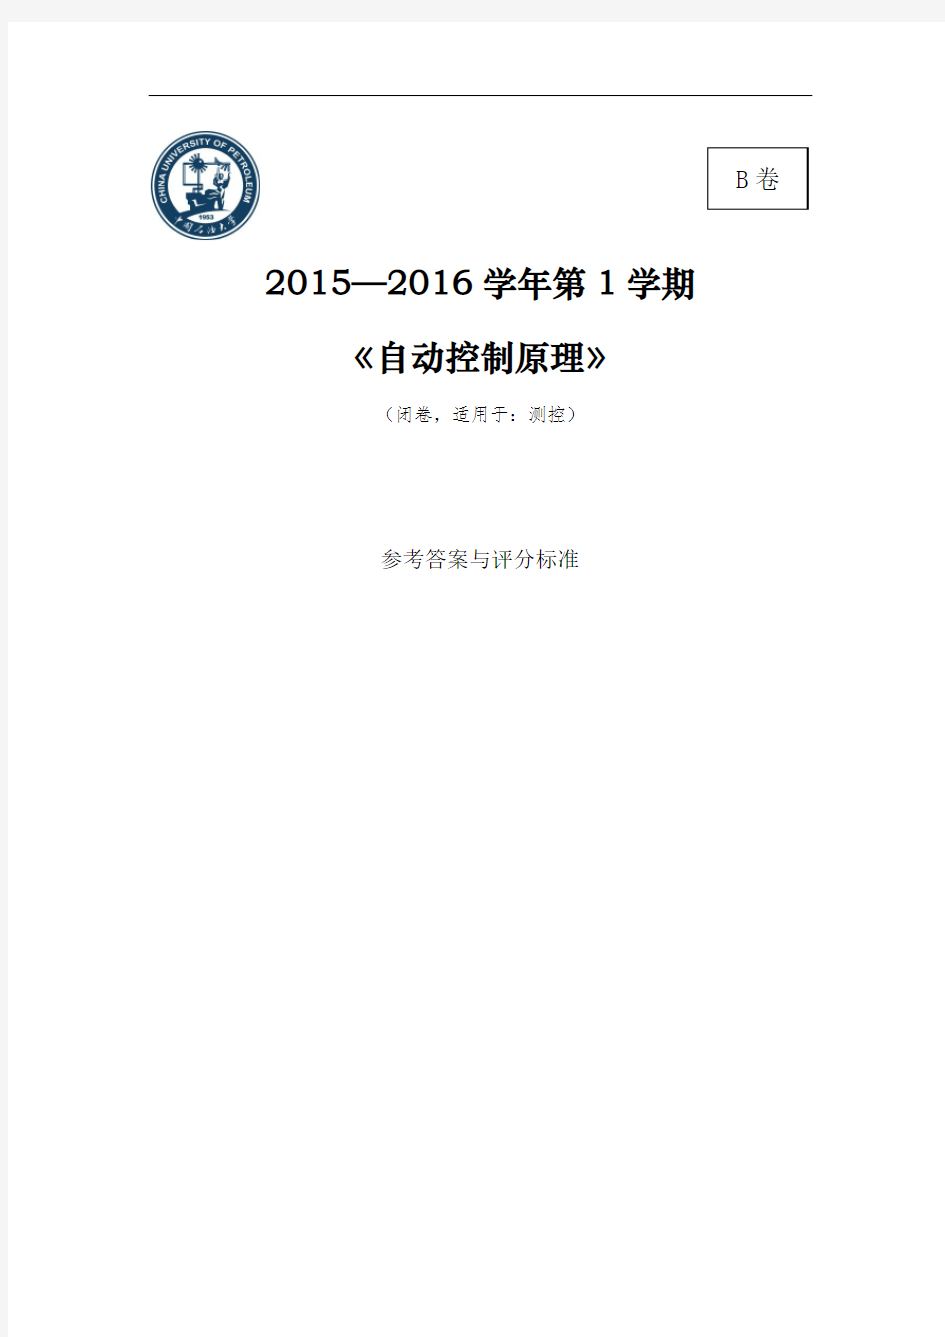 中国石油大学自动控制原理2015-2016年期末考试 B卷 - 答案